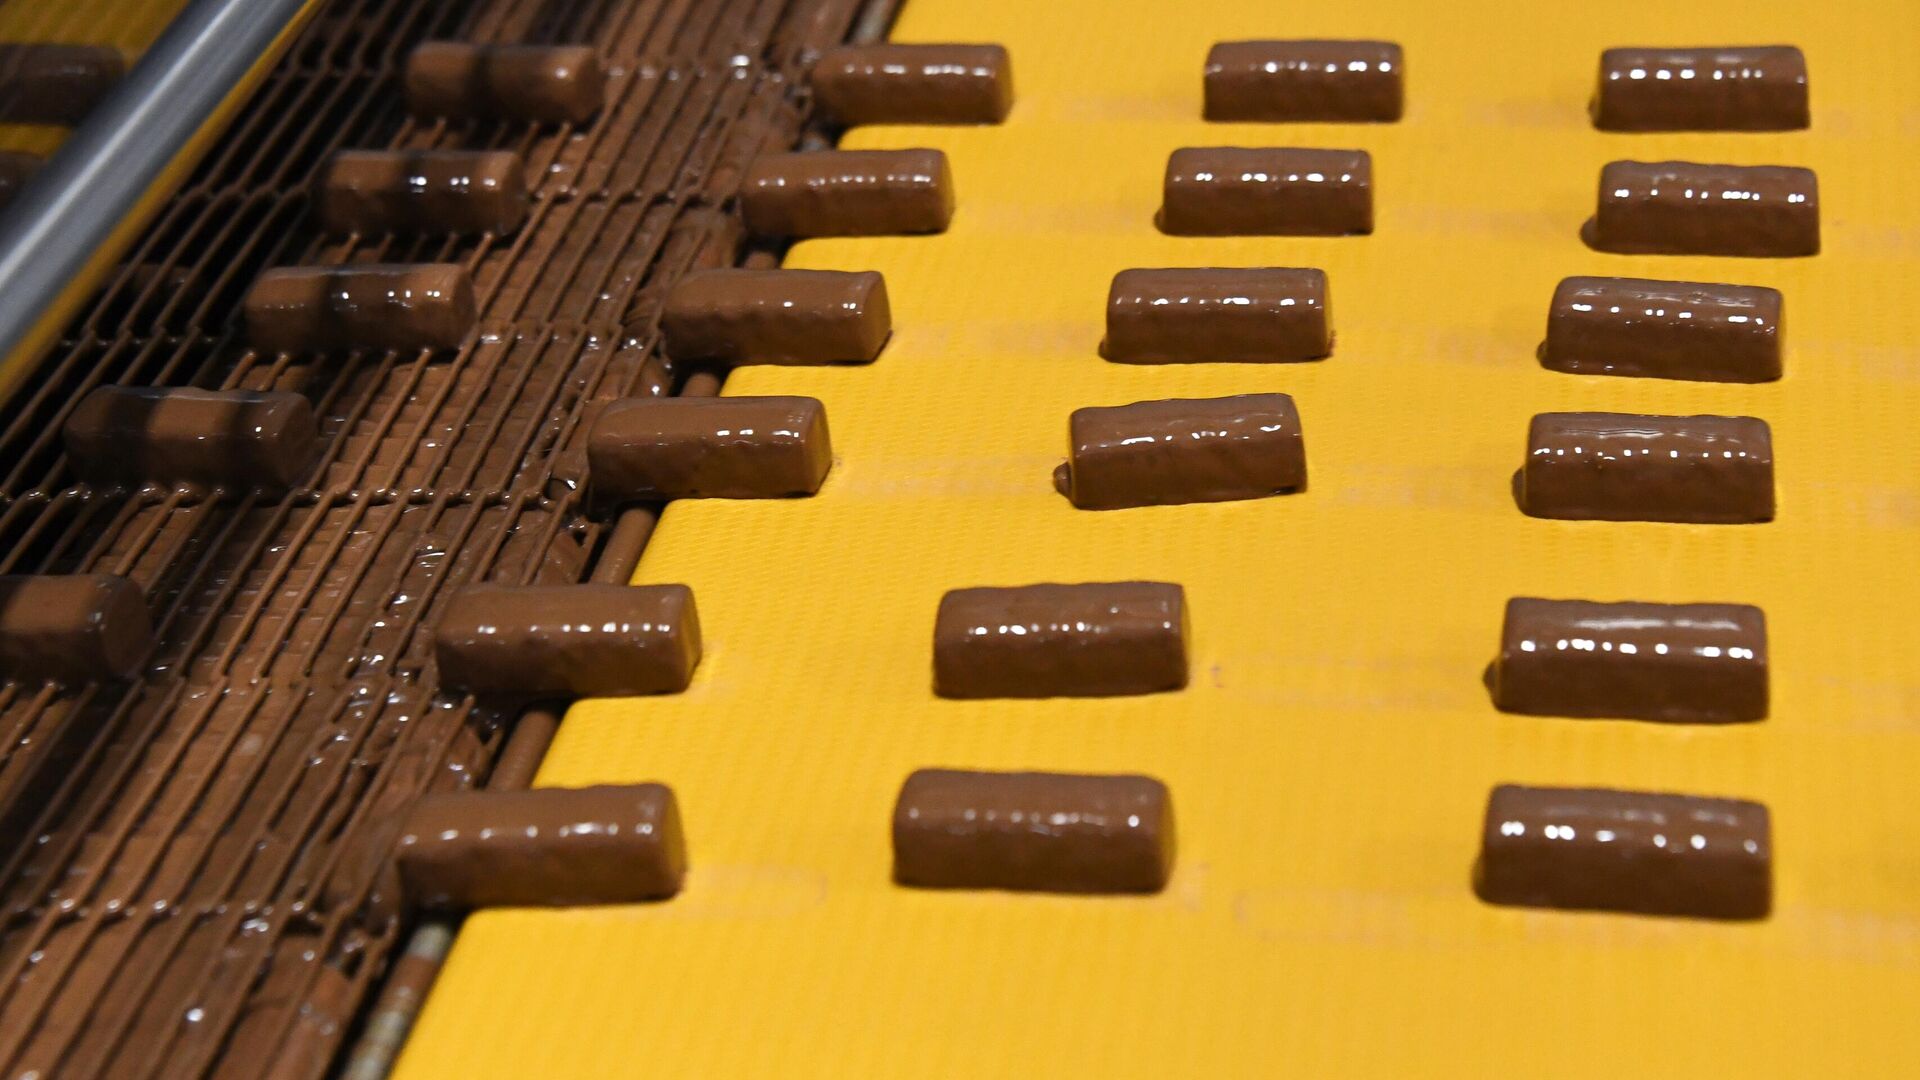 Шоколад подорожает. Кондитерская фабрика Анкон. Завод шоколада. Оранж фабрика шоколада. Производство шоколада на фабрике.